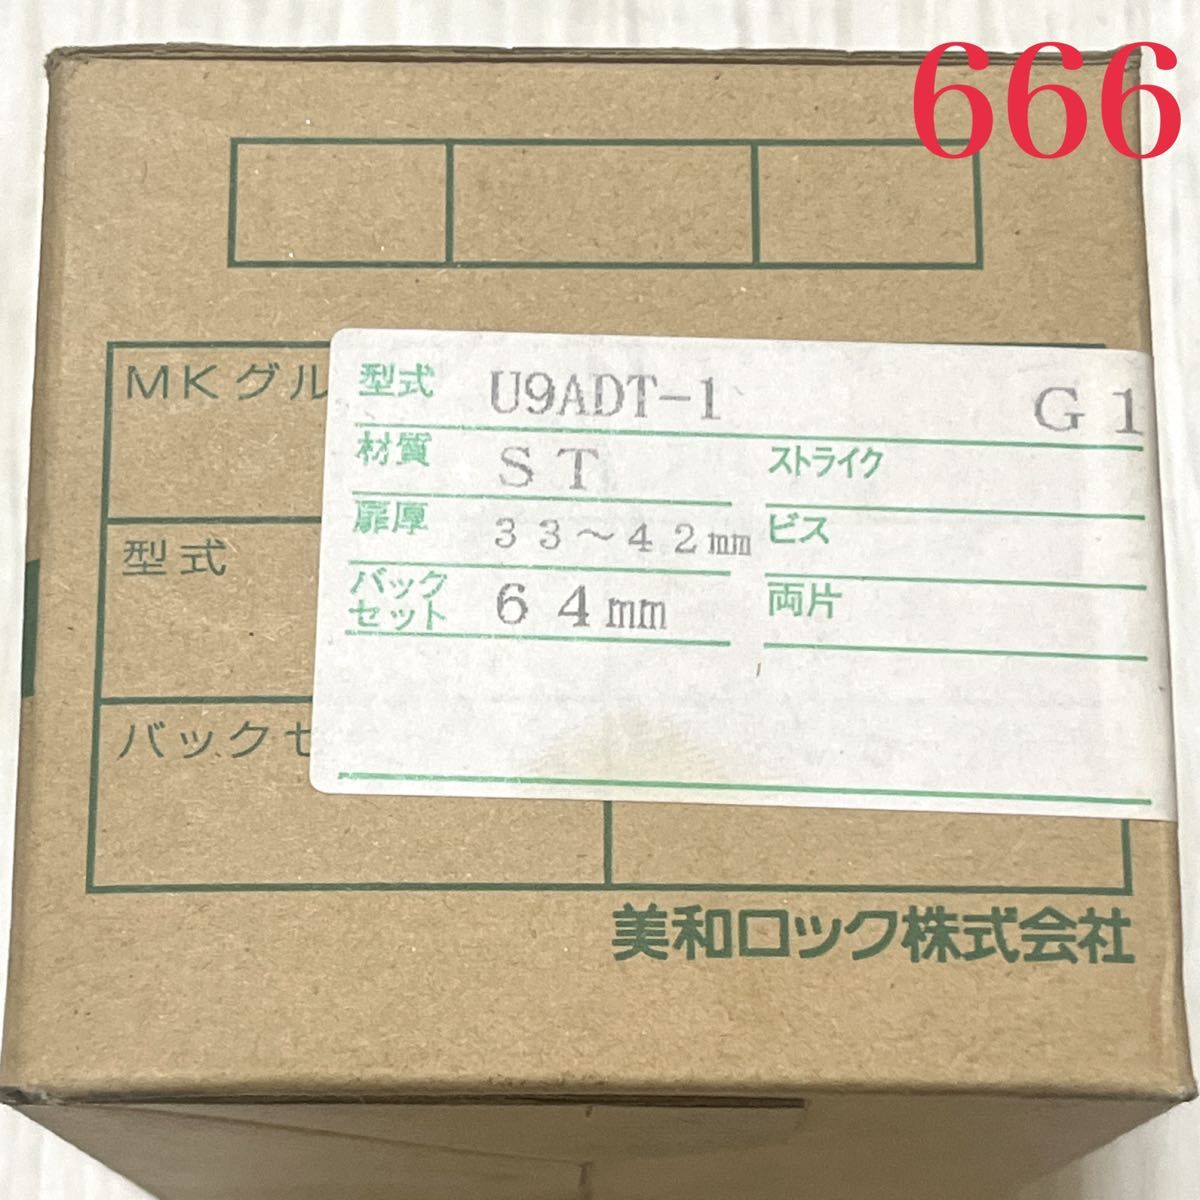 【666】MIWA 美和ロック U9 ADT-1